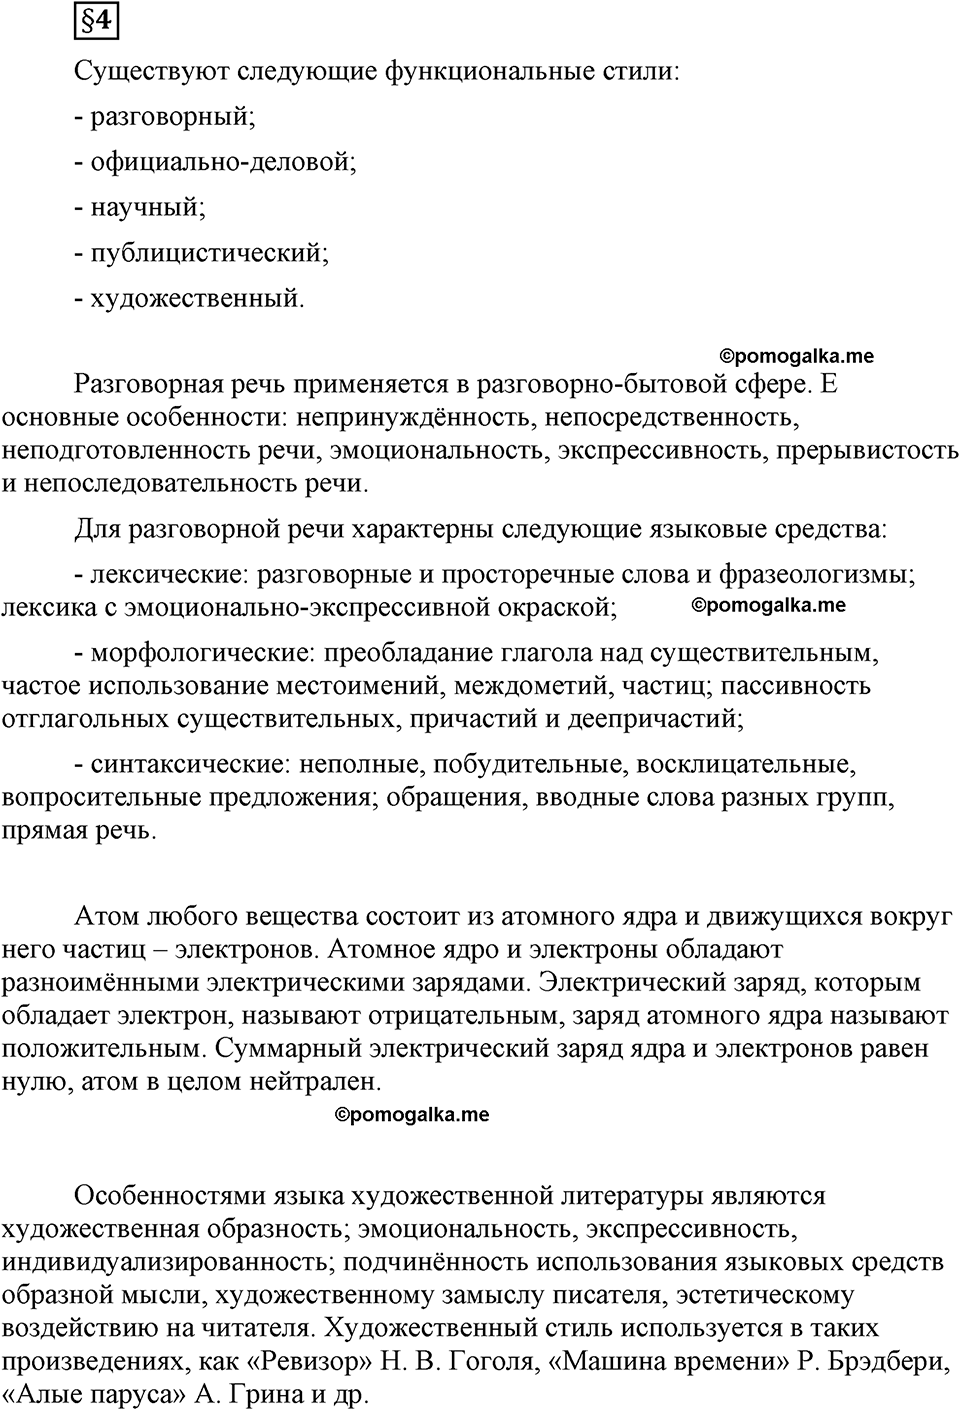 страница 32 вопросы к §4 русский язык 8 класс Львова, Львов 2014 год